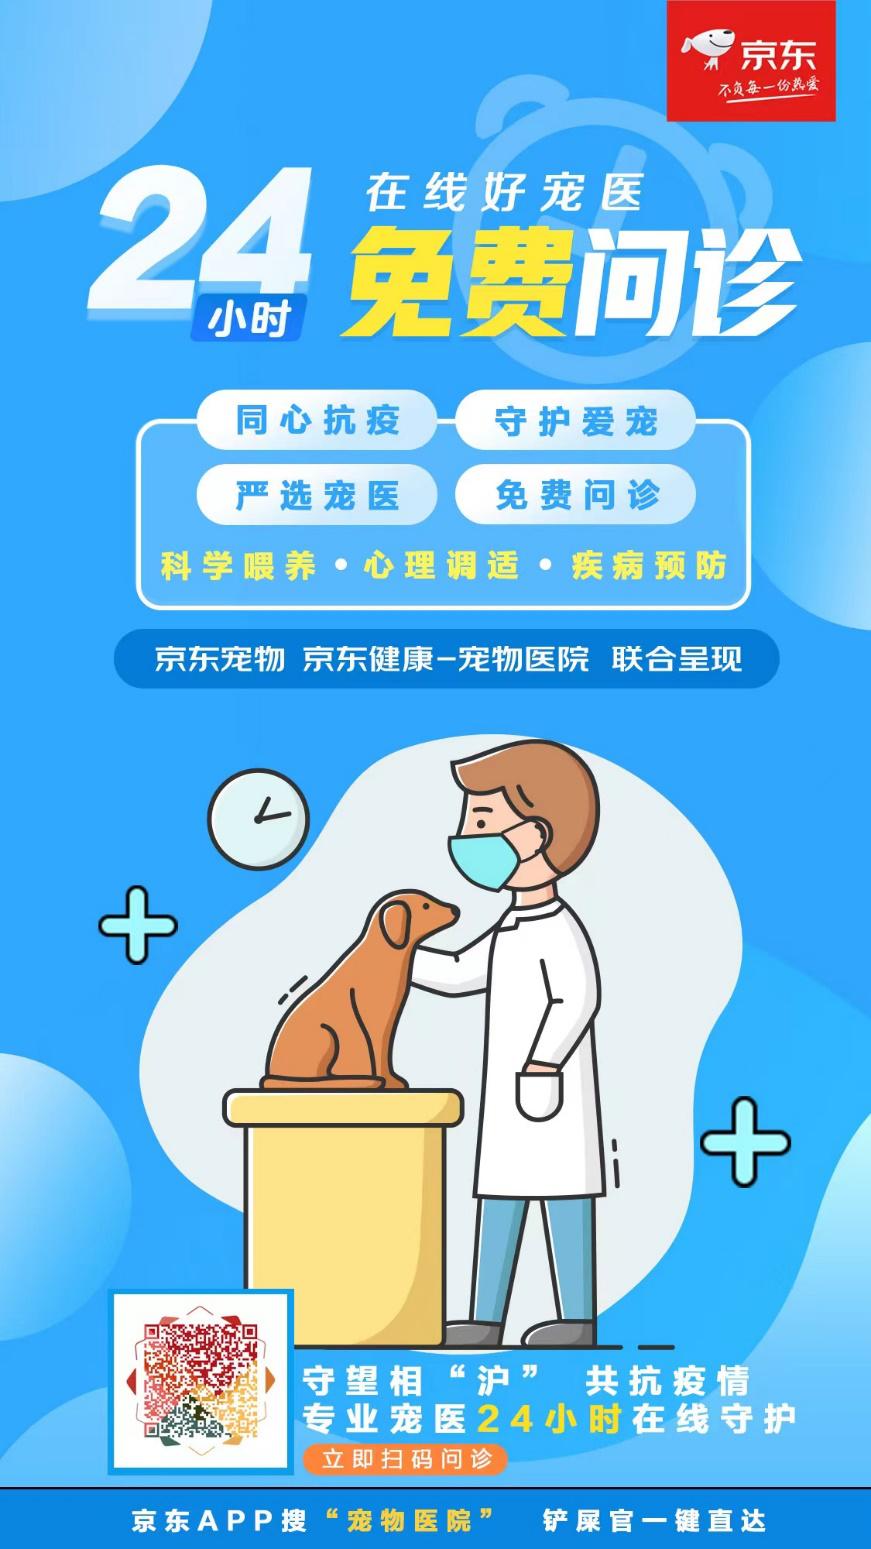 最全上海宠物自救指南来了 京东宠物医生提供免费防疫指导